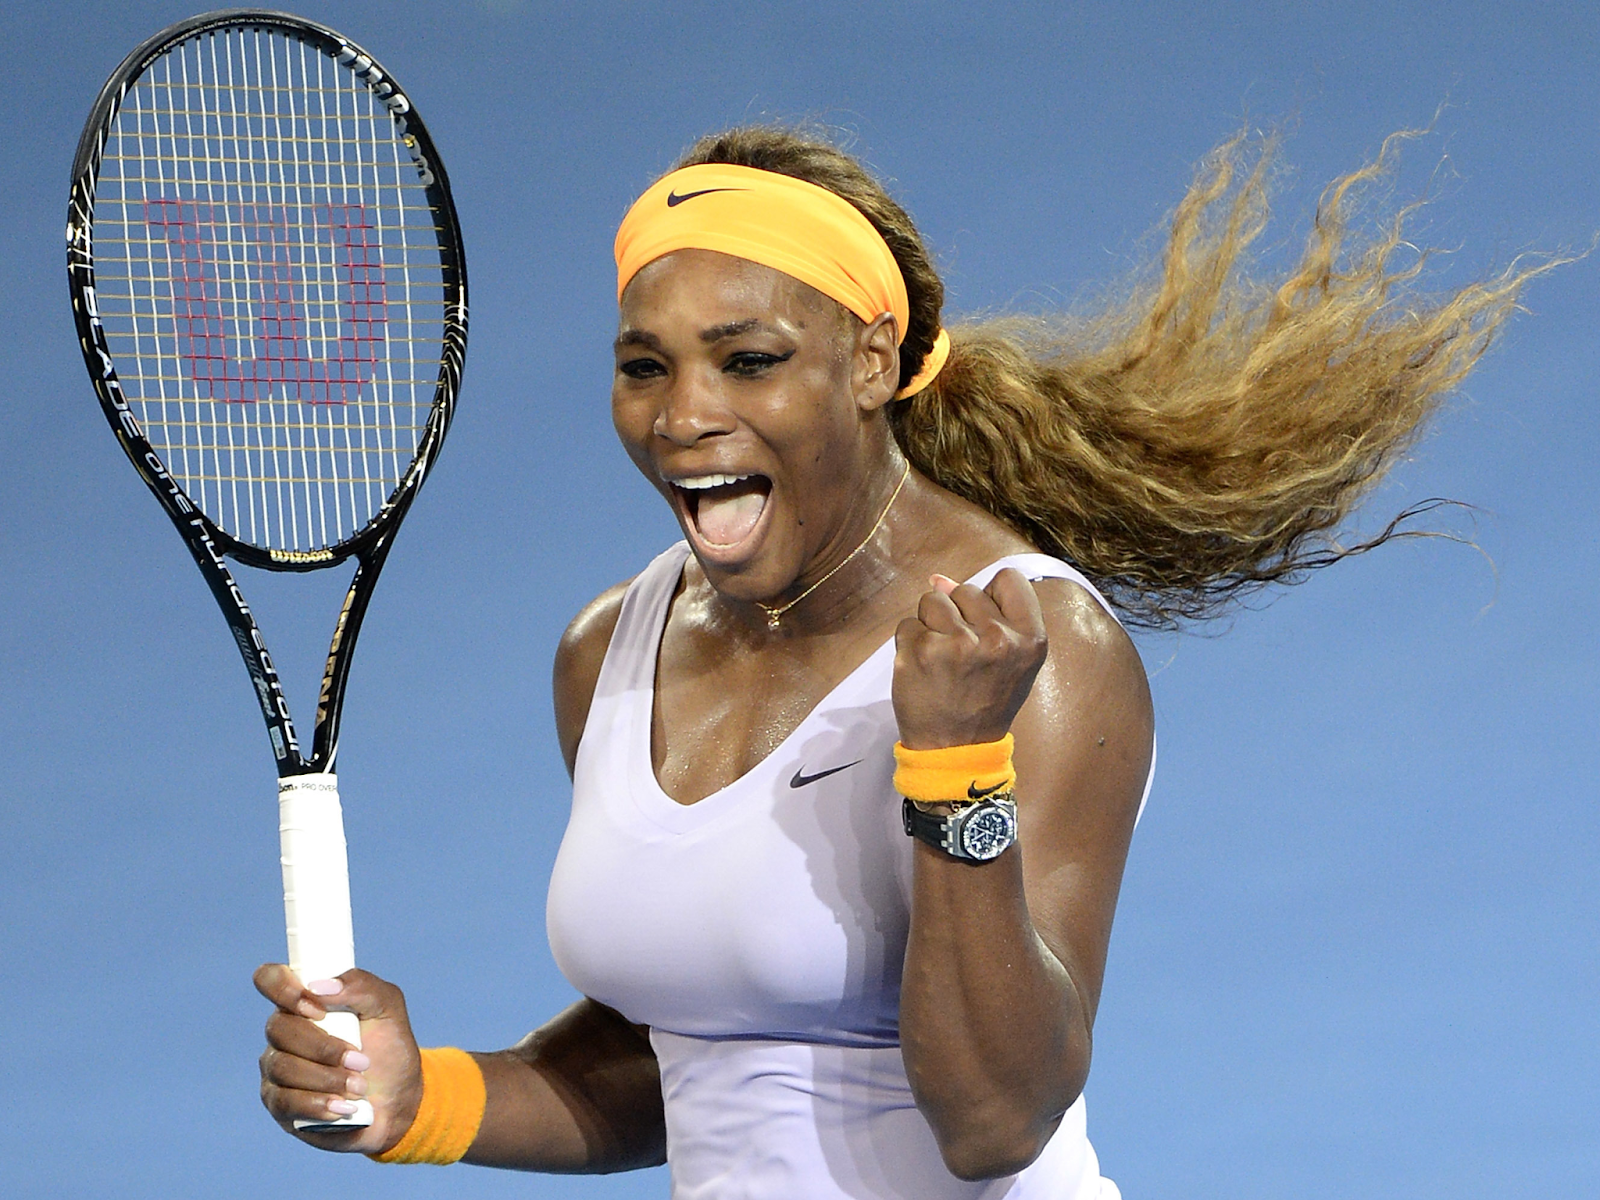 Serena Williams - 5'9" (175 cm)